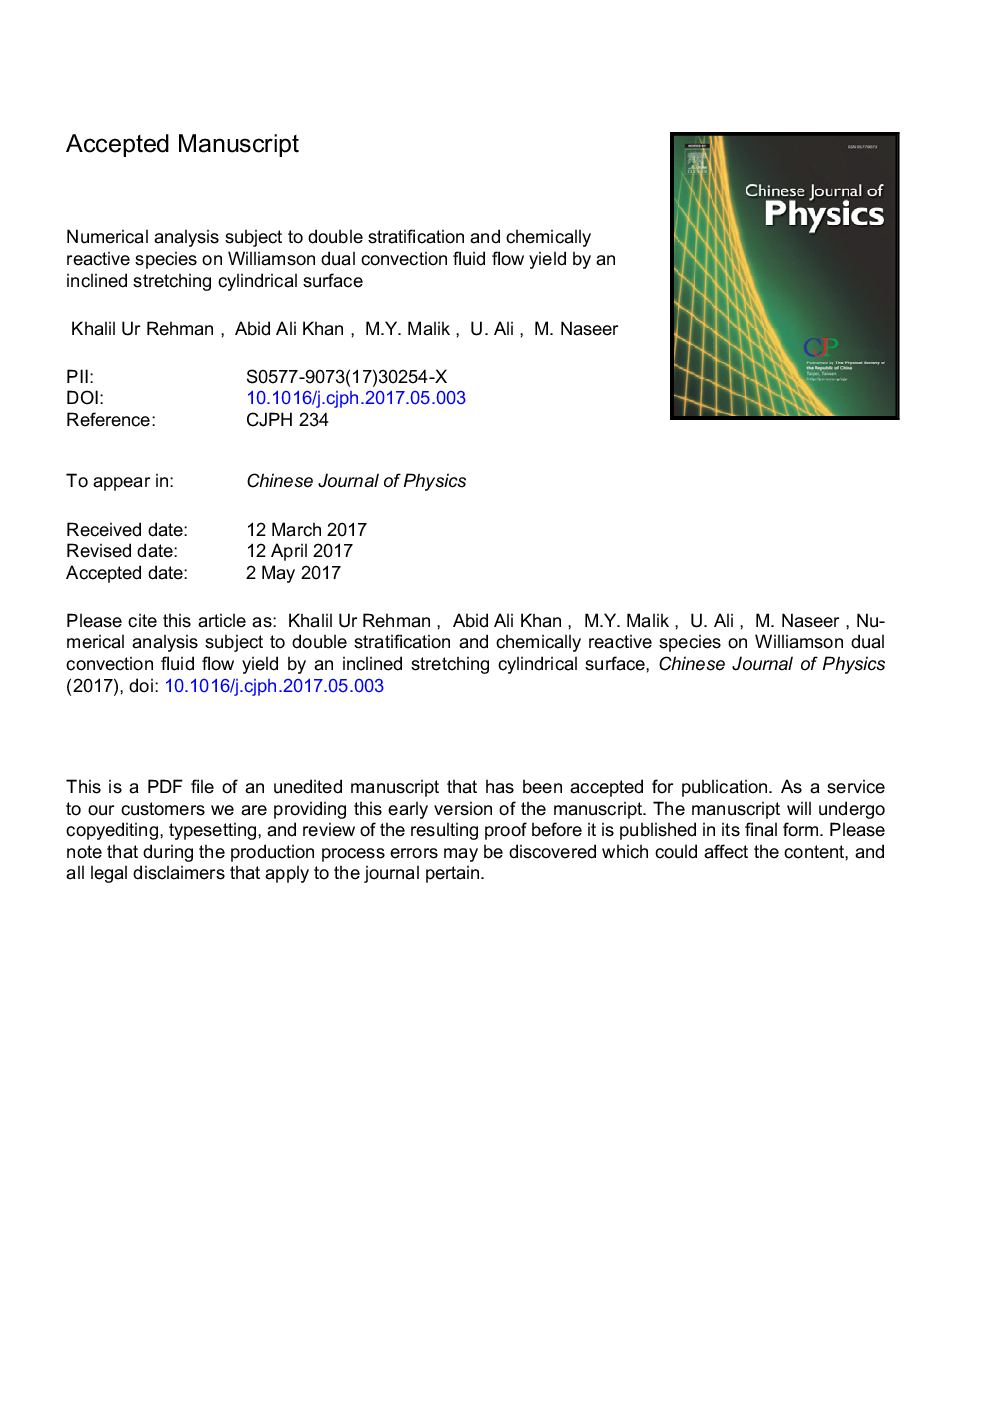 تجزیه و تحلیل عددی با توجه به طبقه بندی دوگانه و گونه های واکنش شیمیایی در عملکرد ویلیامسون دوگانه مایع کنسانتره با استفاده از یک سطح استوانه کششی تمایل 